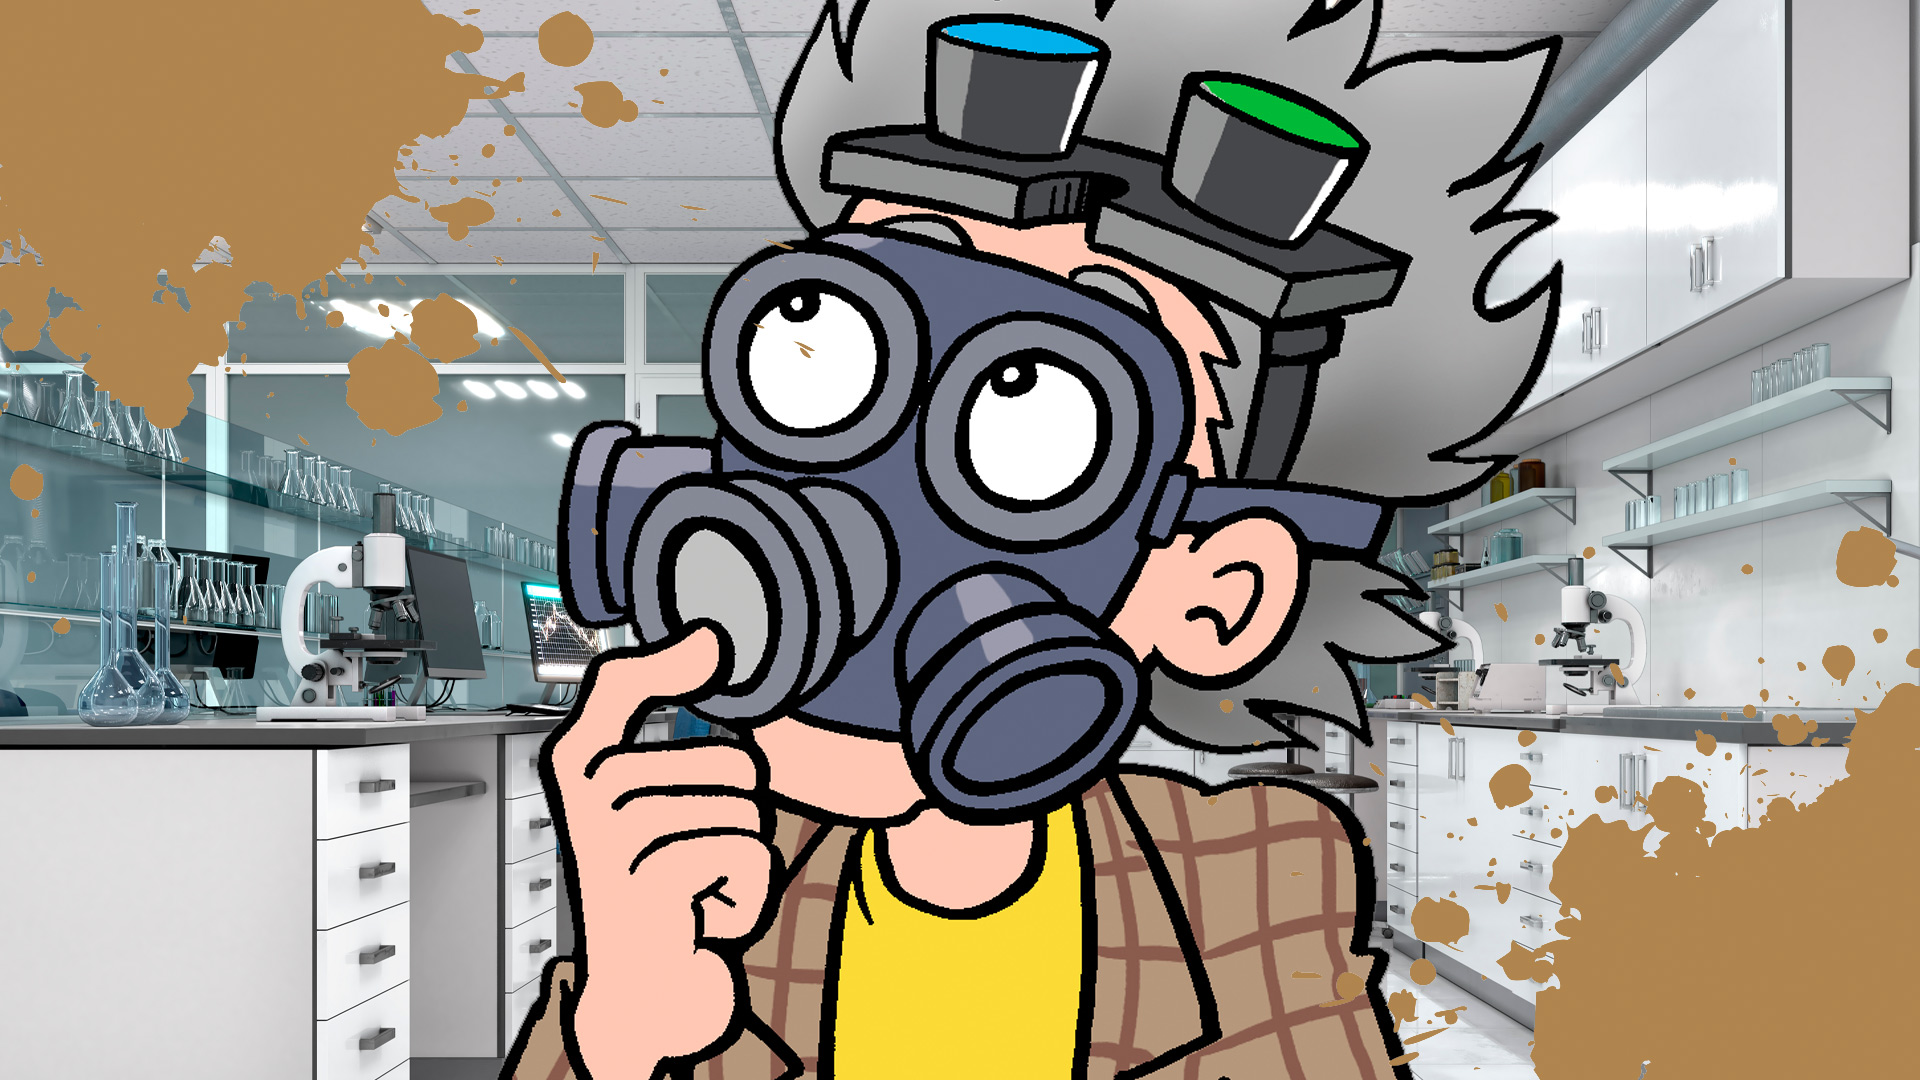 Professor von Screwtop in a gas mask